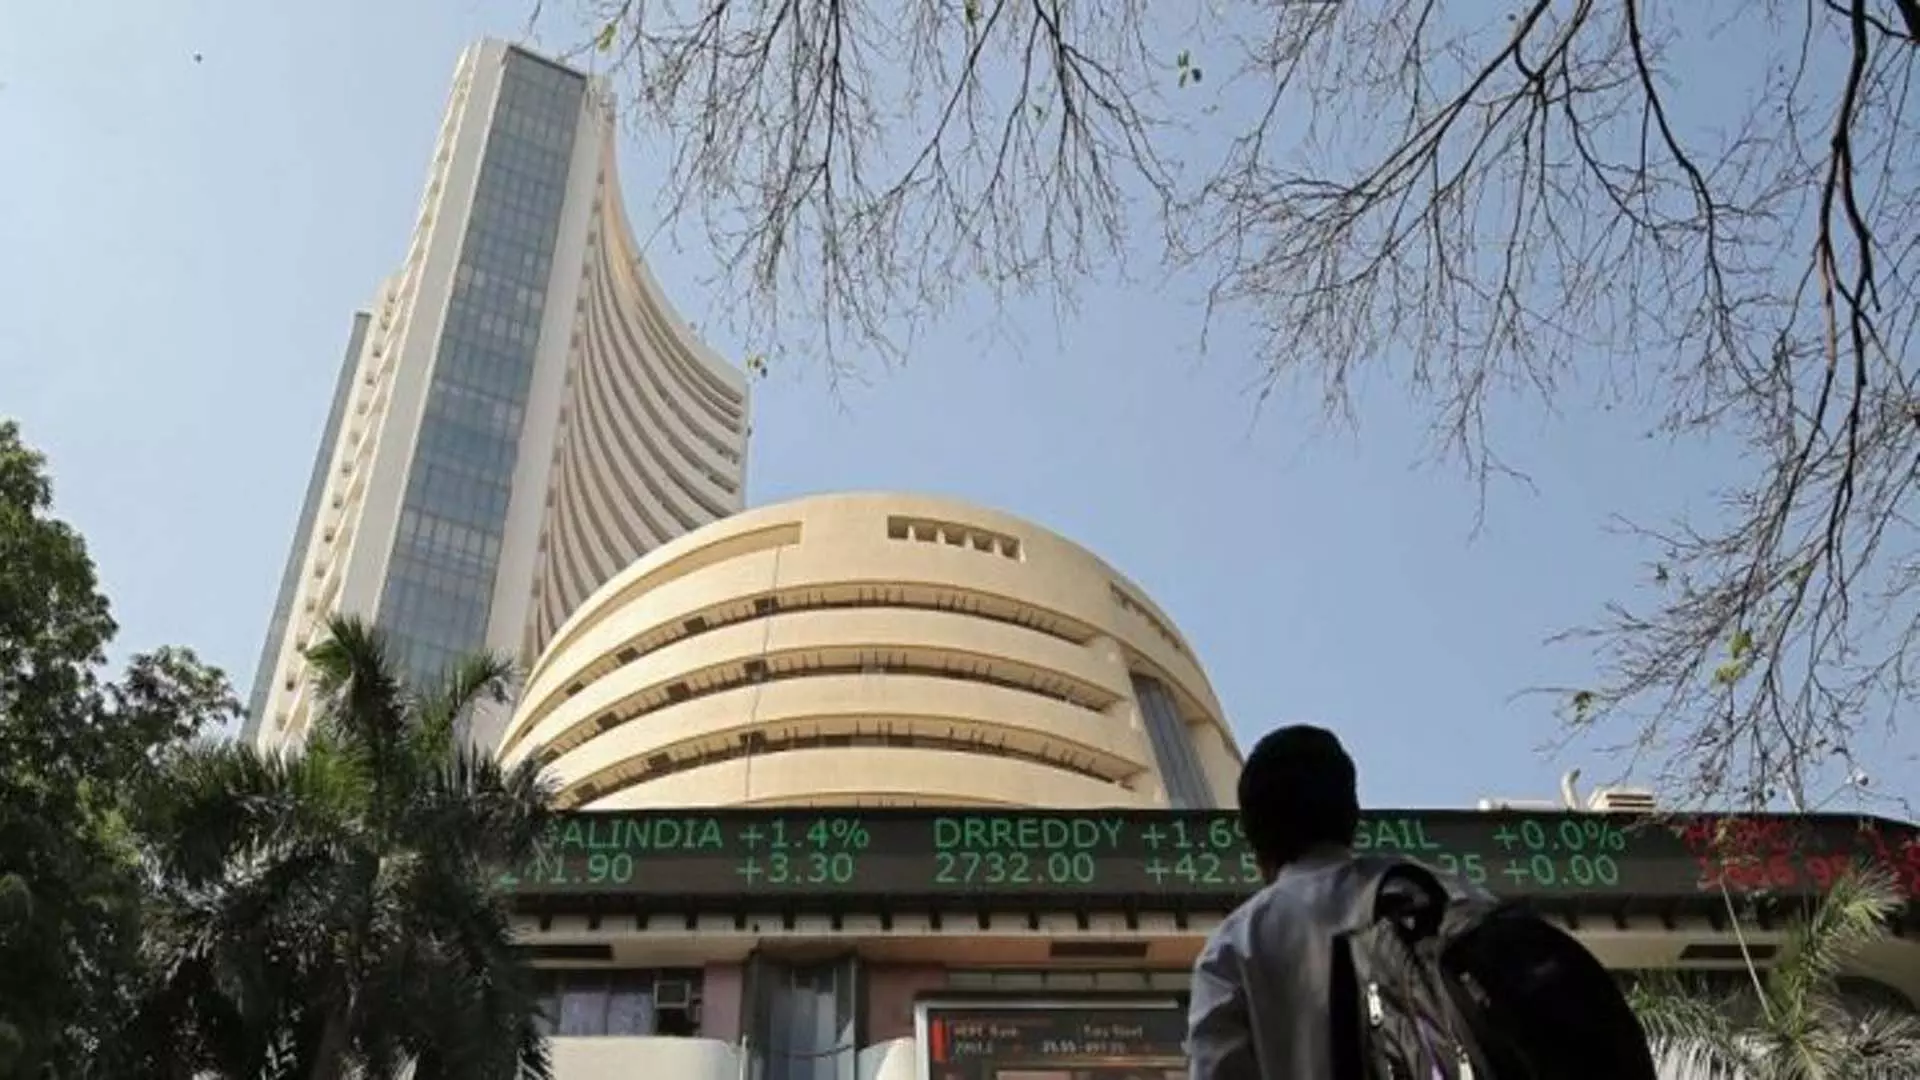 Delhi: शीर्ष 100 सूचीबद्ध कम्पनियां 1 जून से बाजार अफवाहों की तुरंत पुष्टि करेंगी